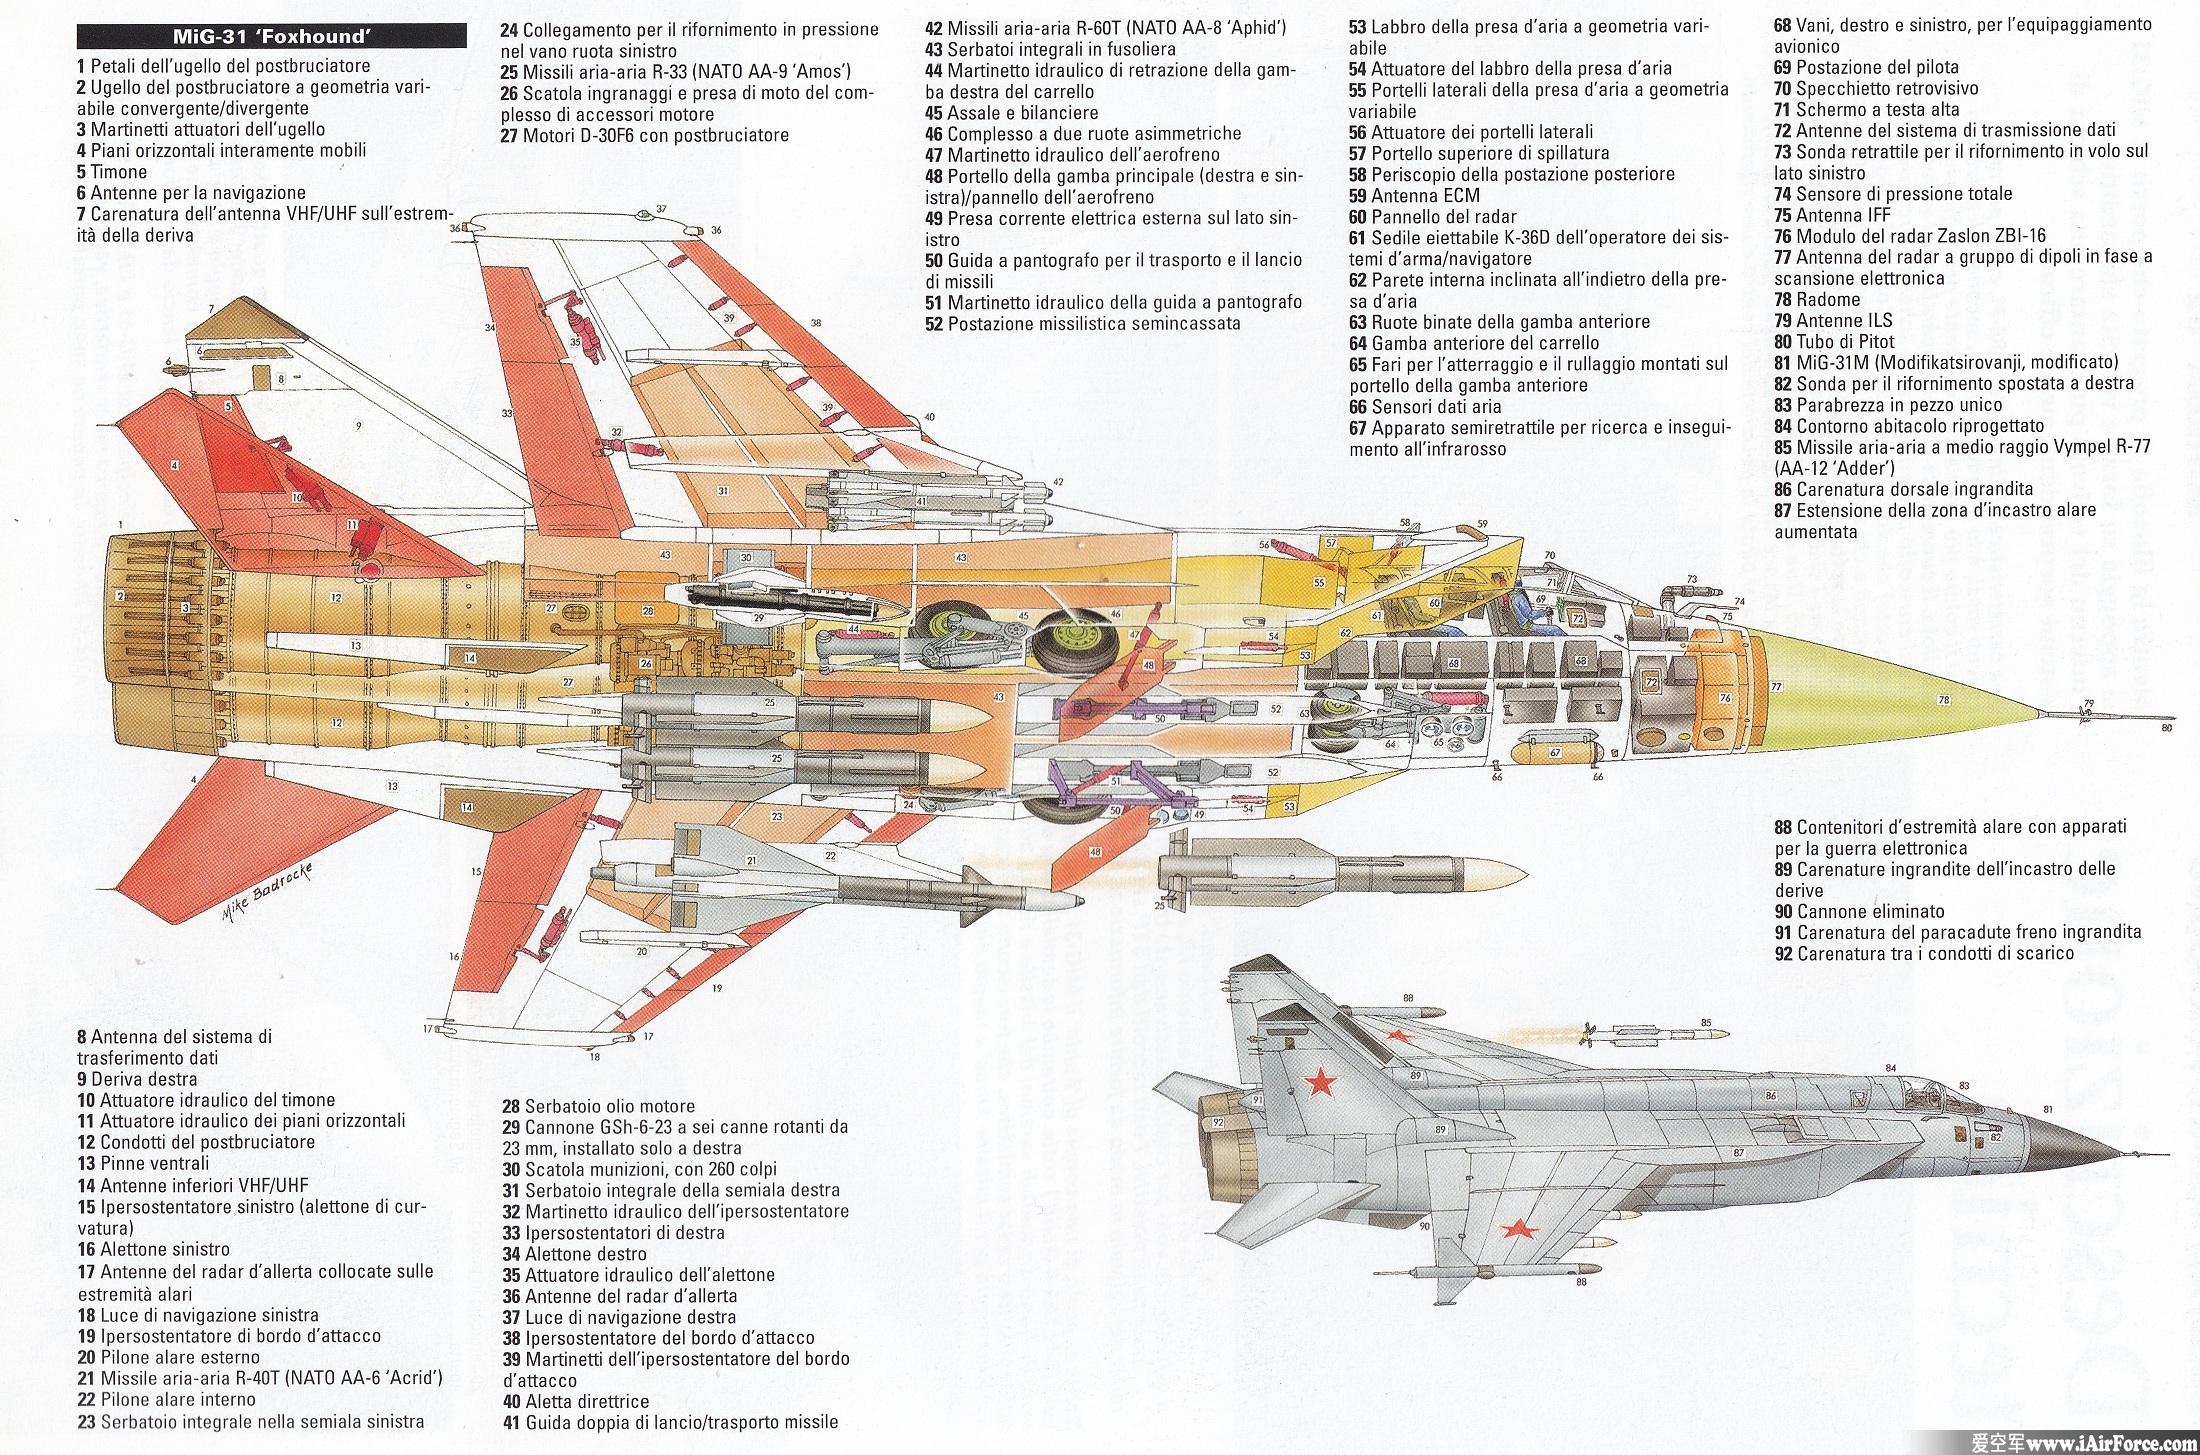 米格-31 战斗机 Mig-31 立体剖视图